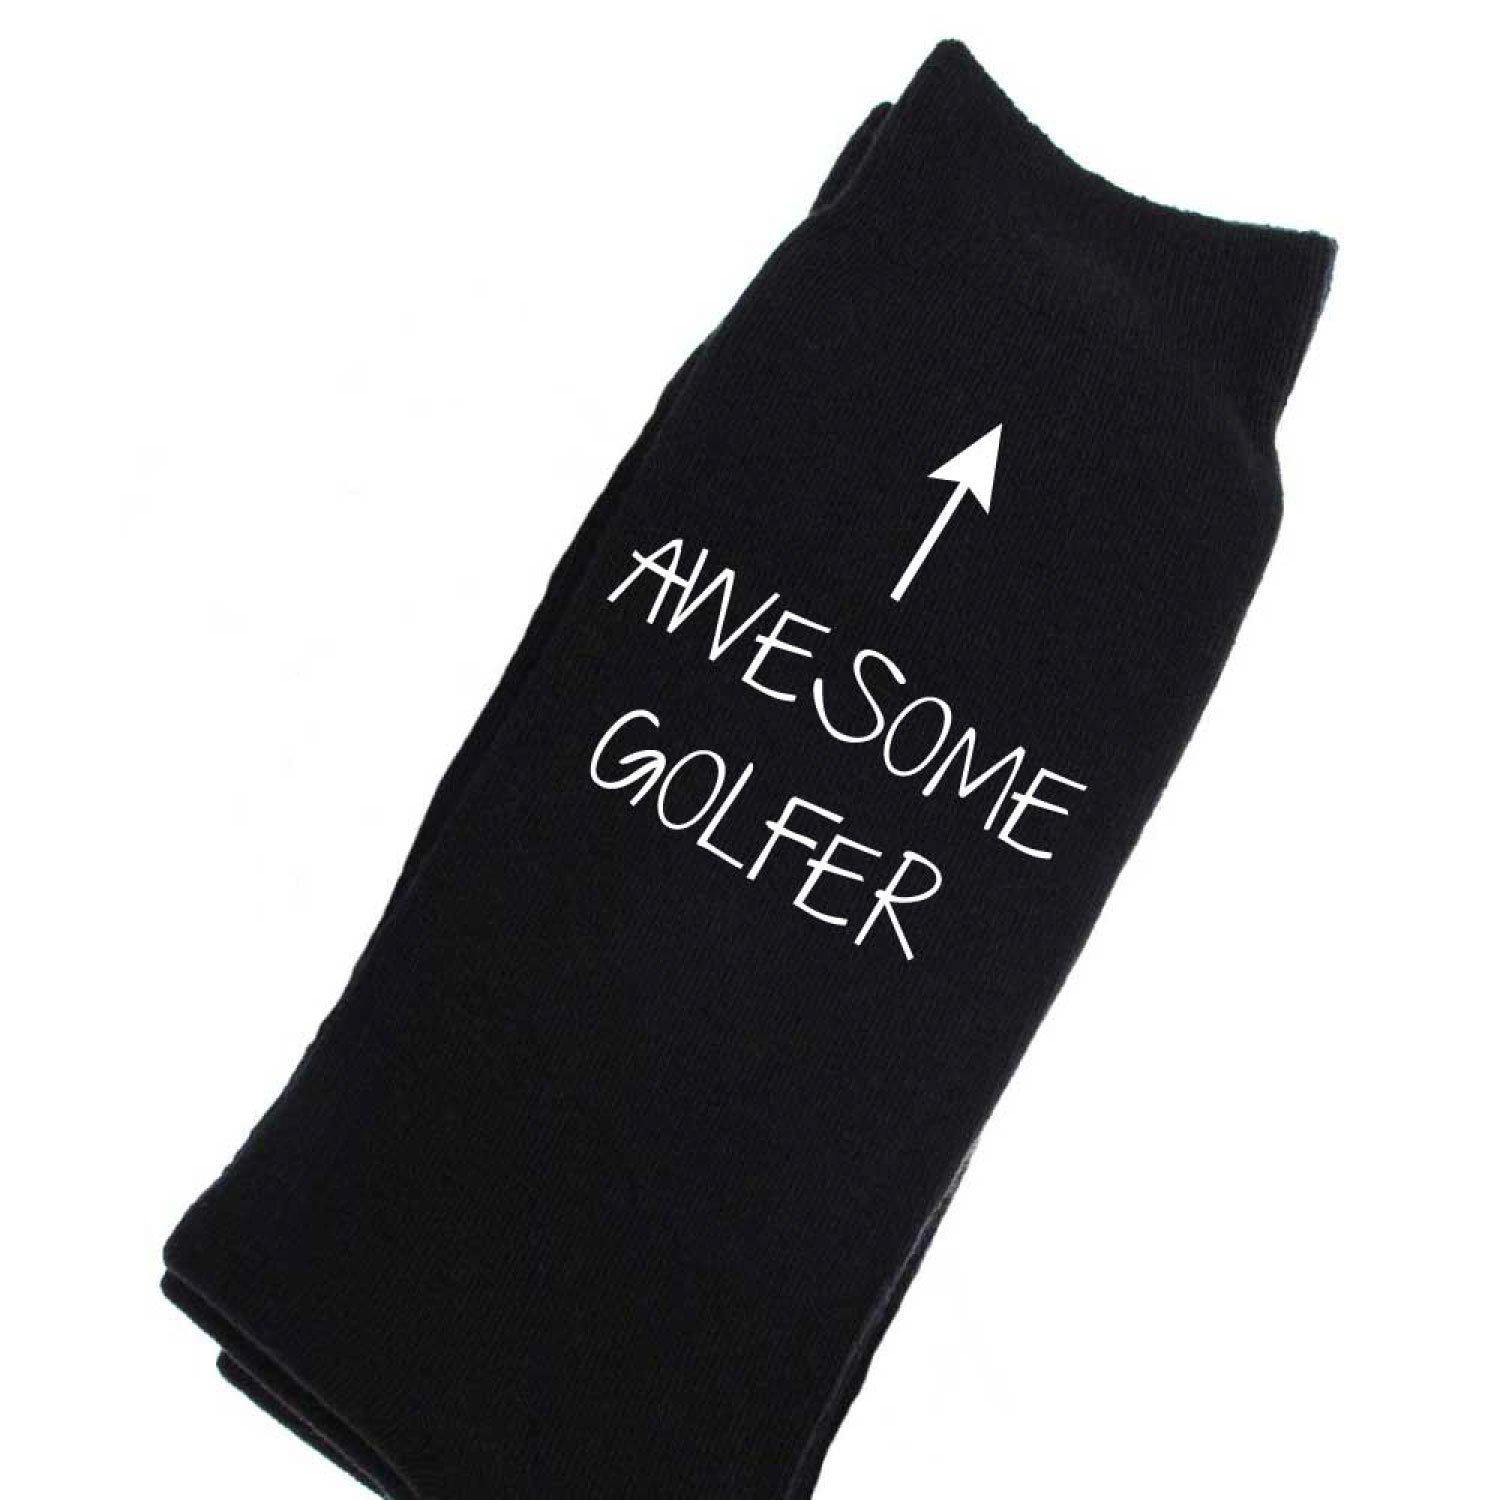 Awesome Golfer Black Calf Socks